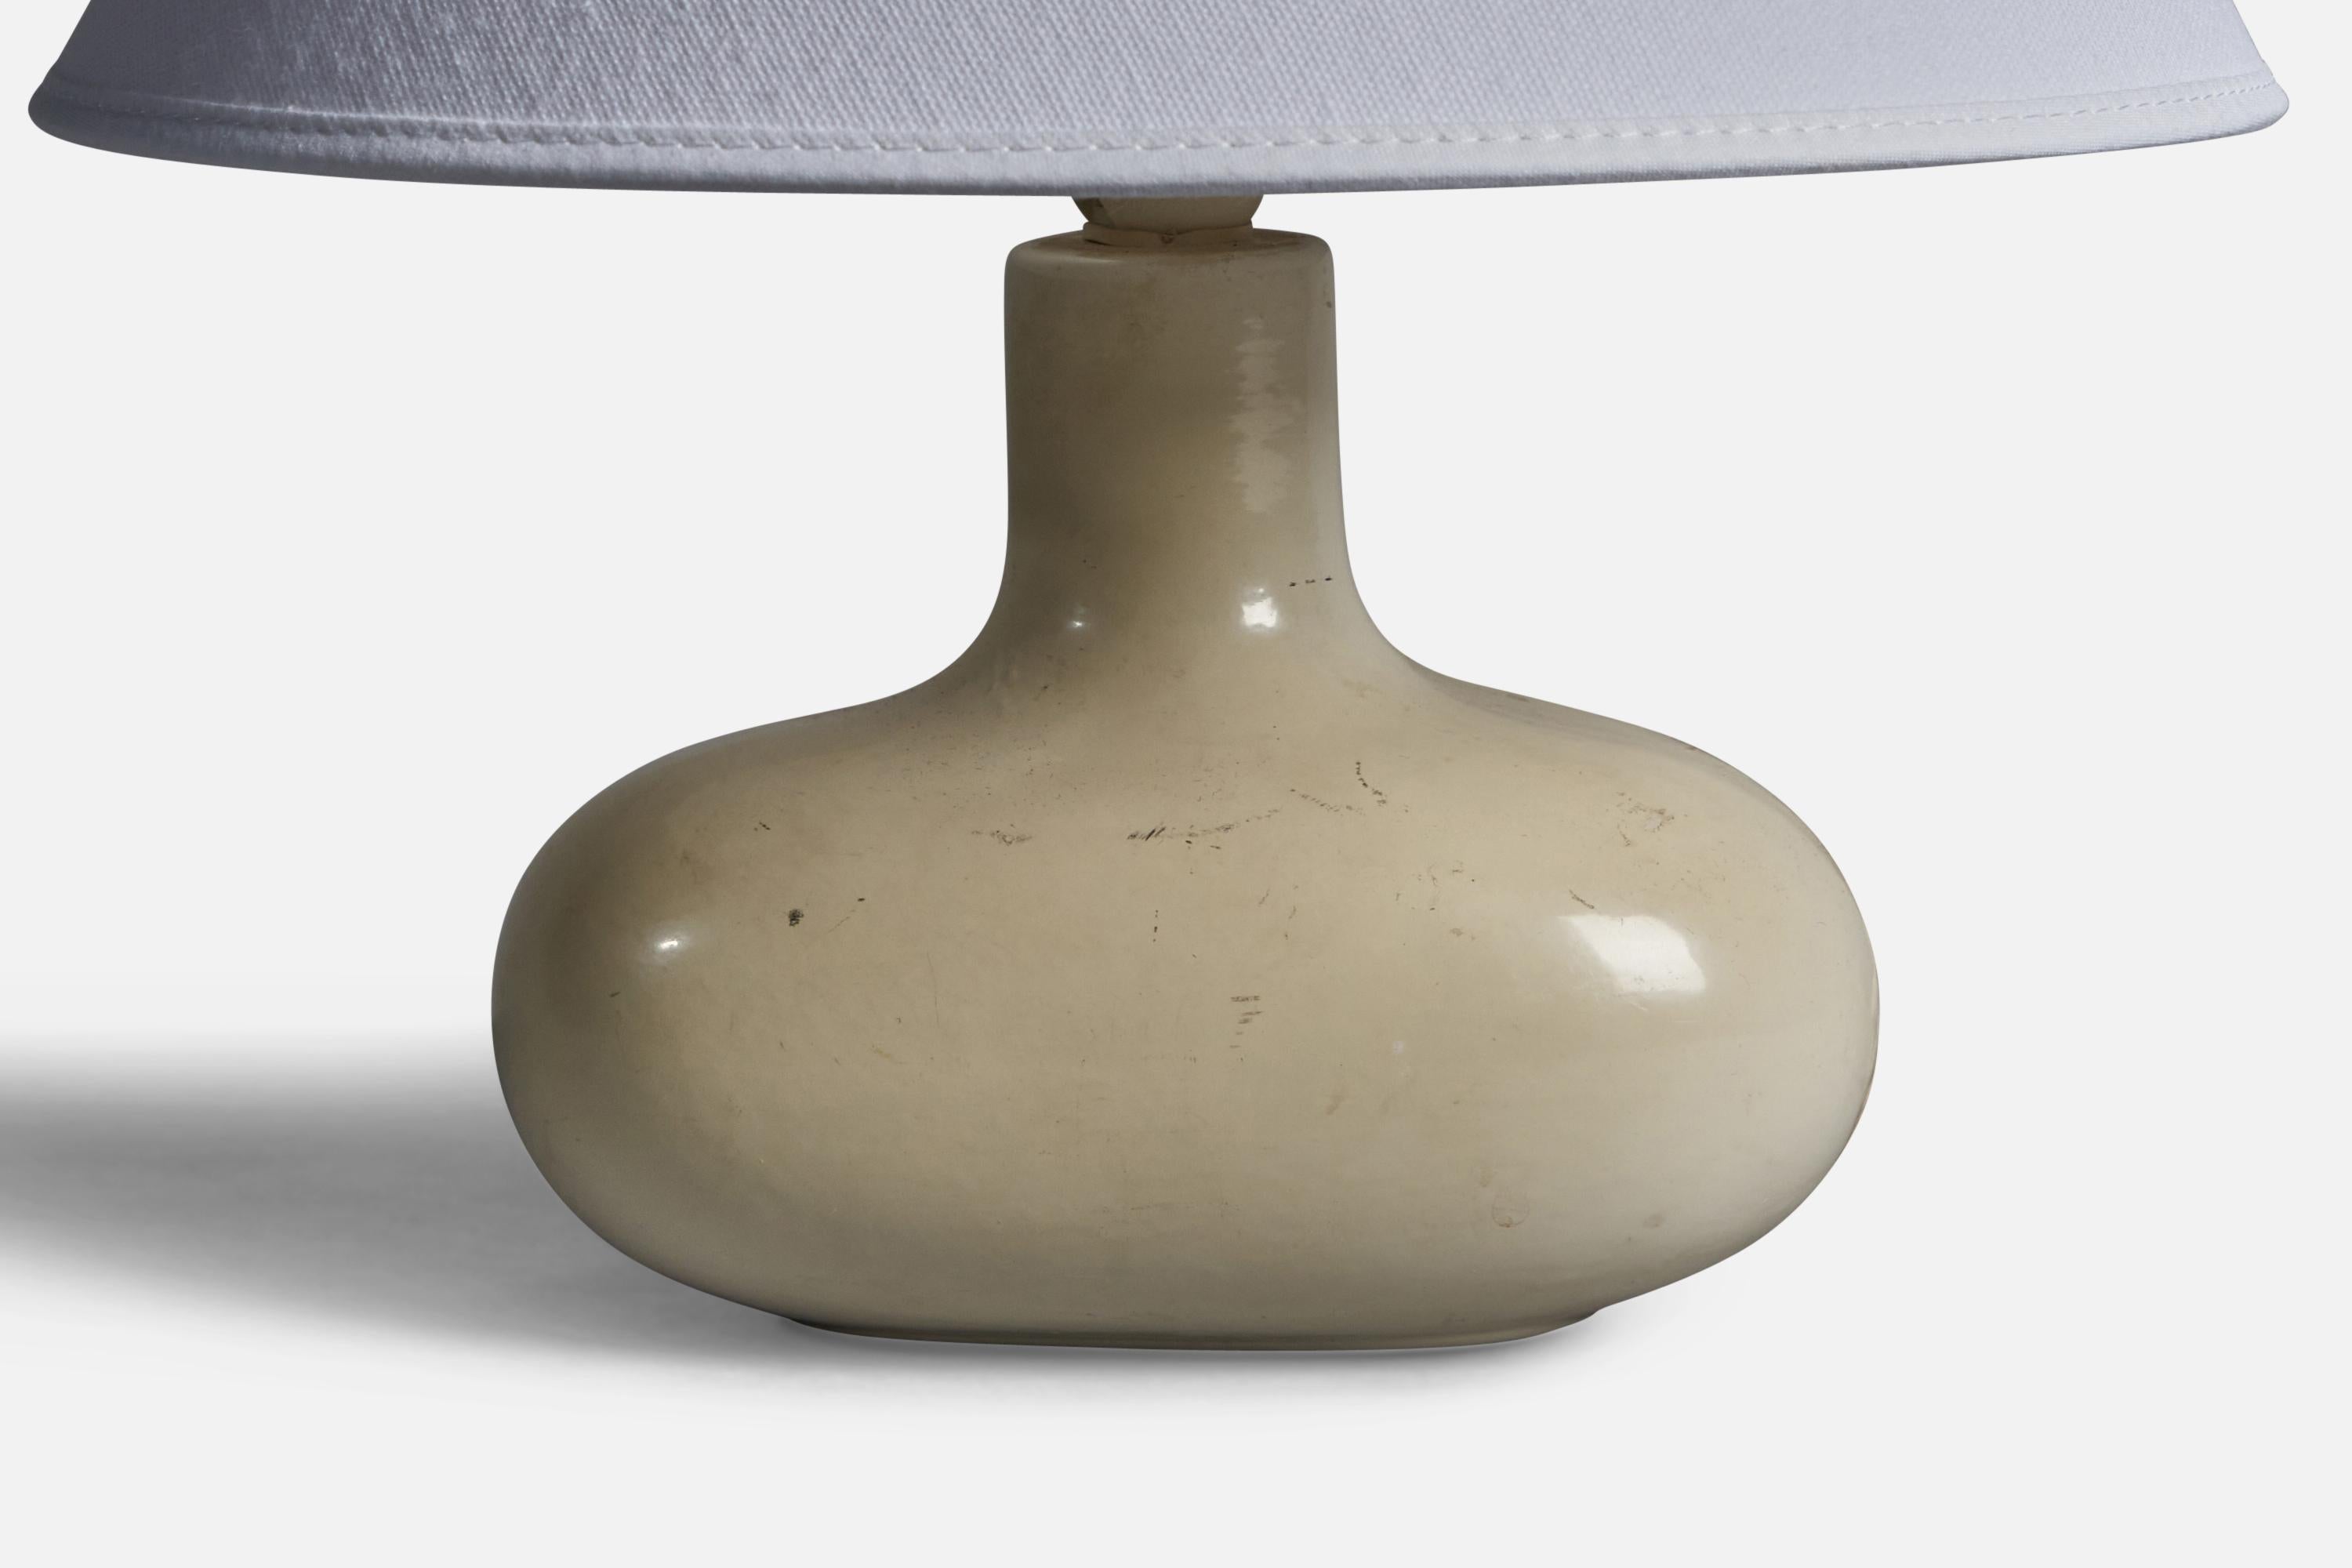 Lampe de table blanc-crème conçue et produite en Suède, années 1970.

Dimensions de la lampe (pouces) : 7.5